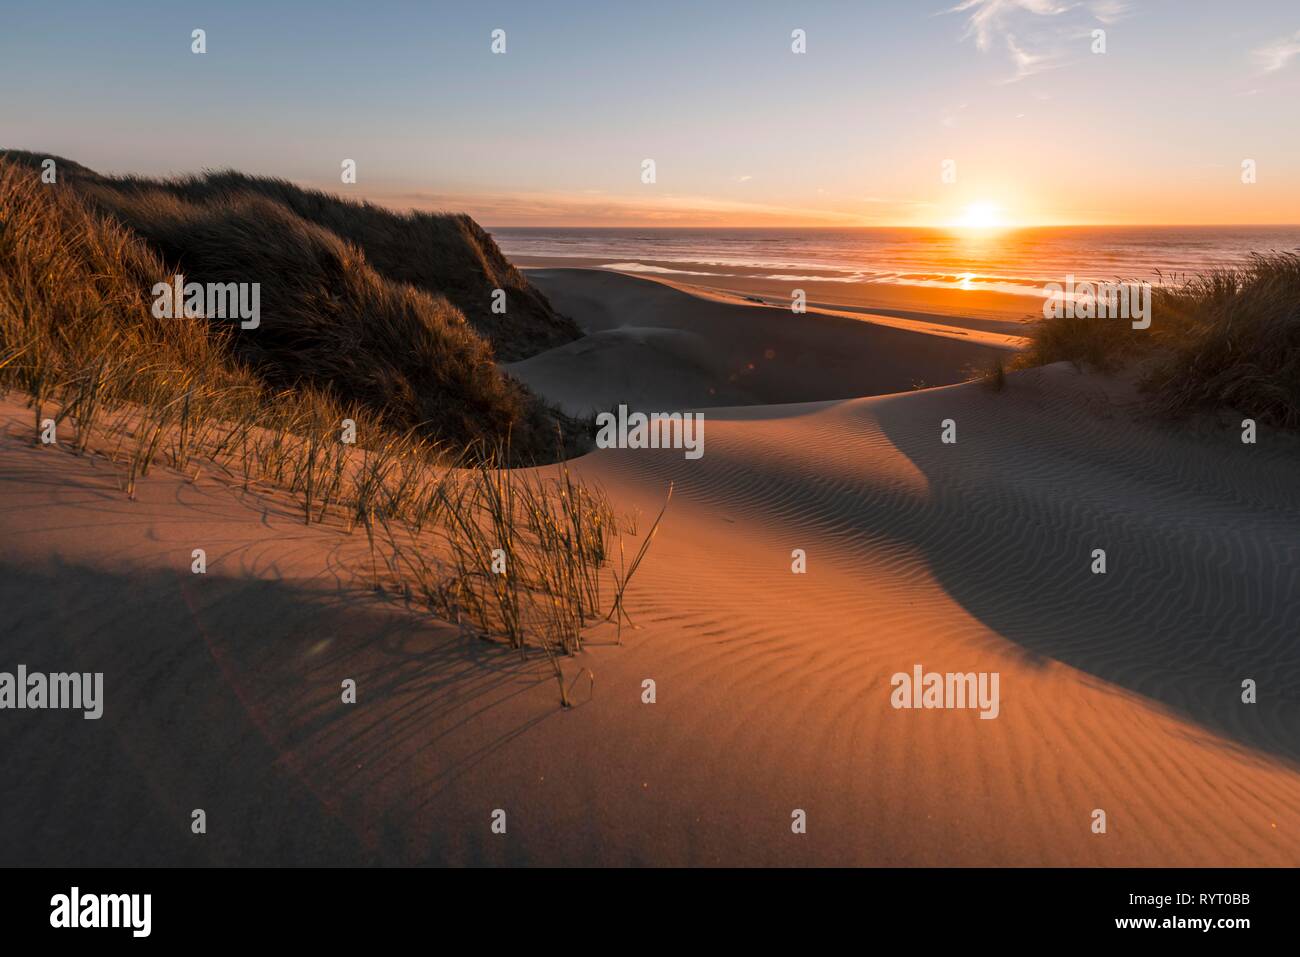 Puesta de sol, playa con arena y dunas de arena en la costa, aliso Dune, Baker Beach, viewpoint Holman Vista, Oregón, EE.UU. Foto de stock